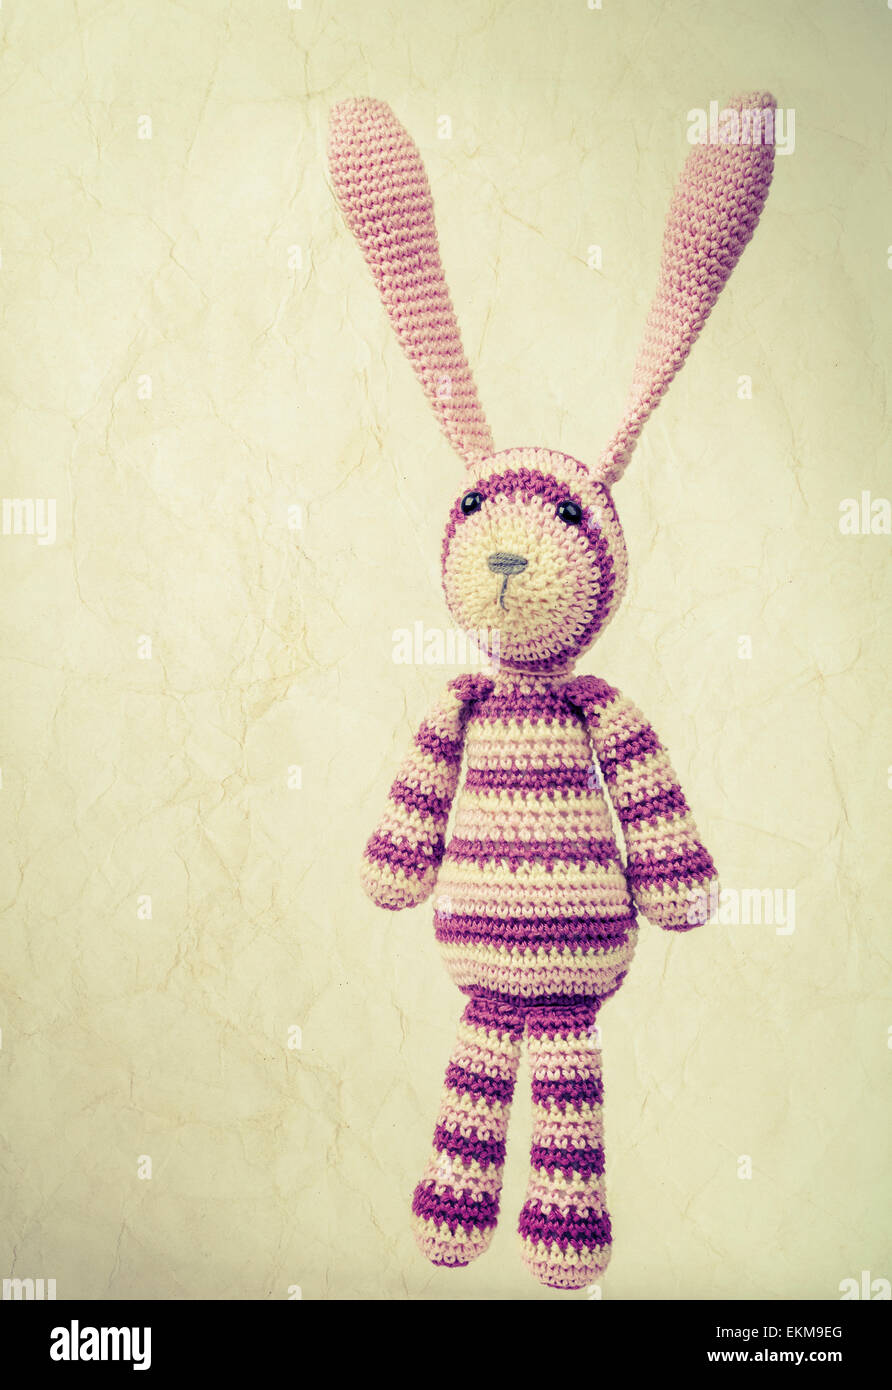 Drôle de jouet de lapin tricoté avec les oreilles portrait, photo aux tons vintage style rétro avec effet tonique et old paper texture Banque D'Images